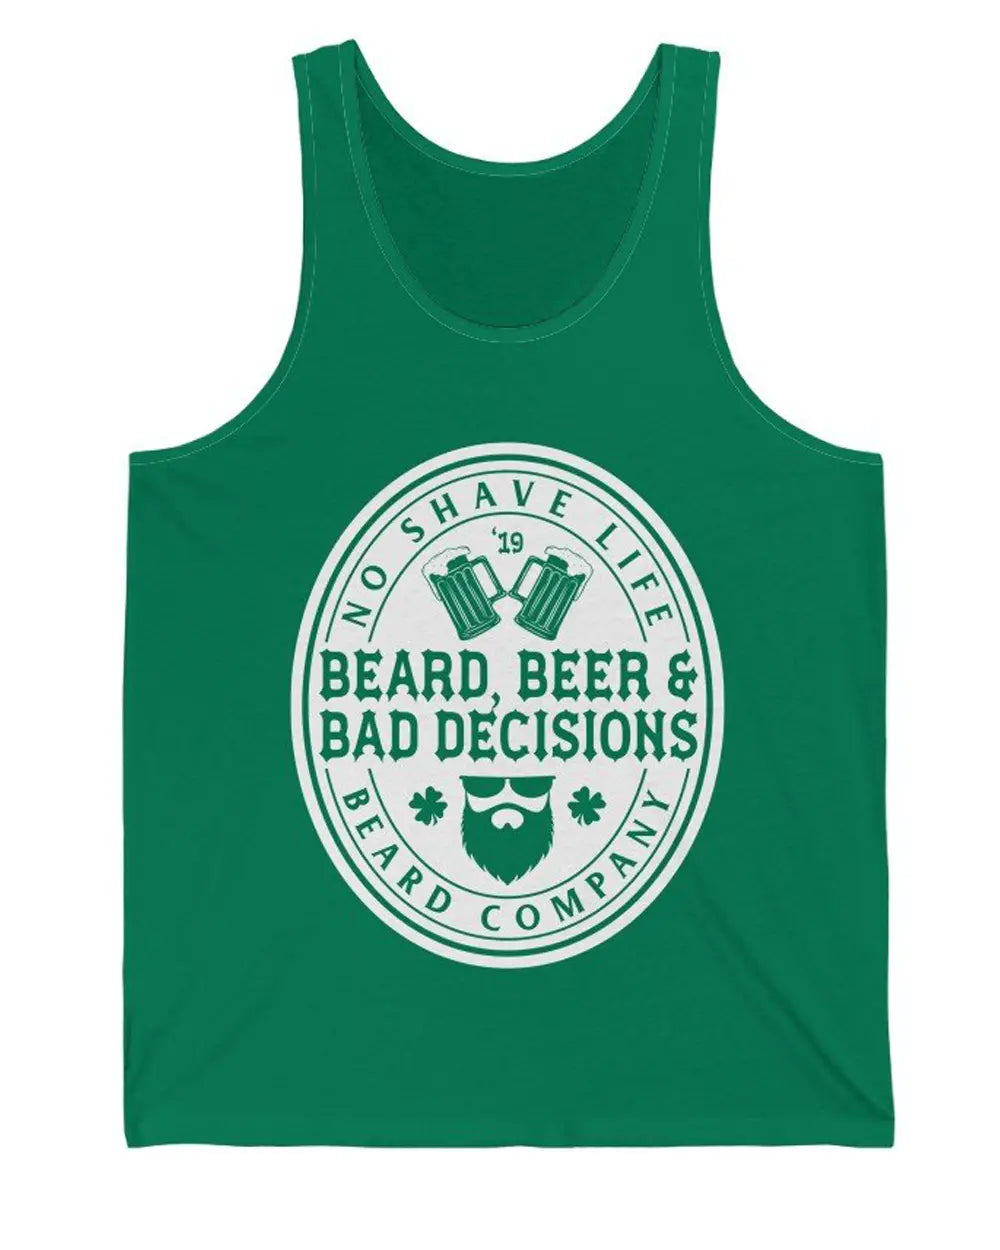 Beard, Beer & Bad Decisions Green Men's Tank Top|Mens Tank Top